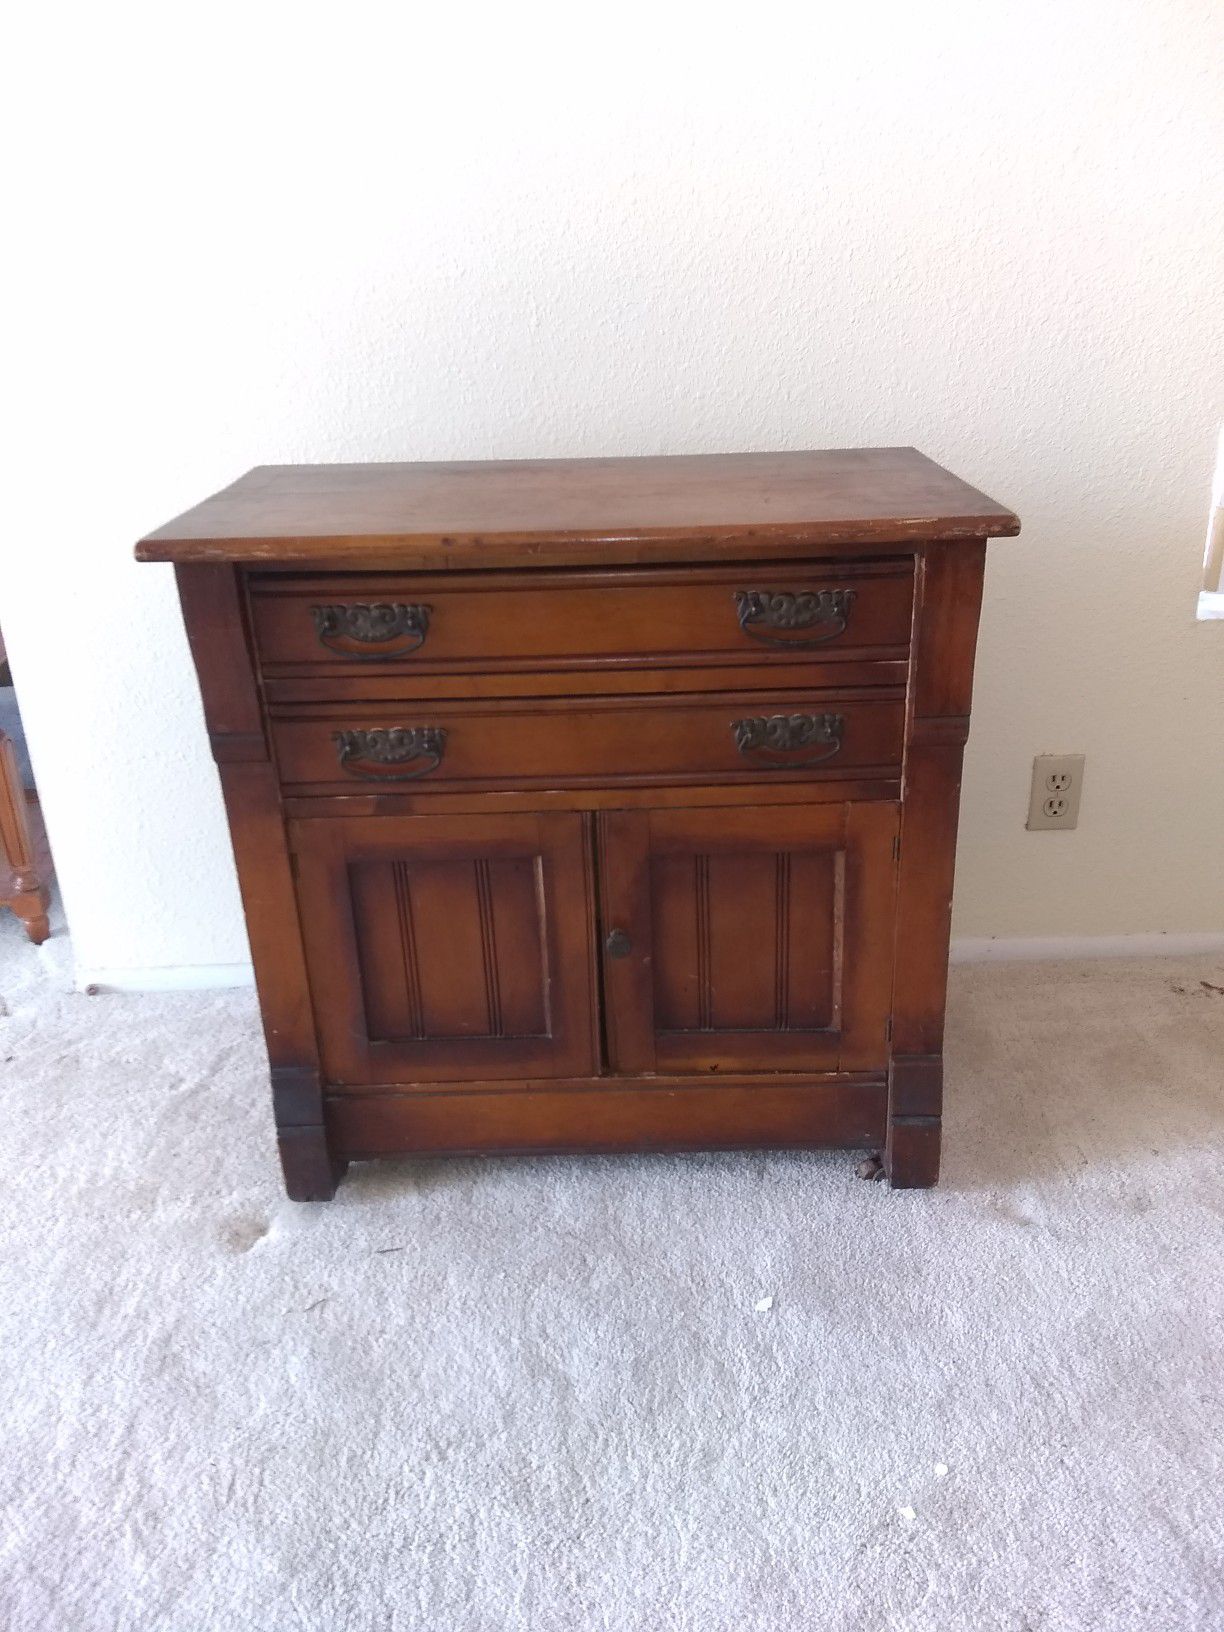 Antique wood dresser cabinet